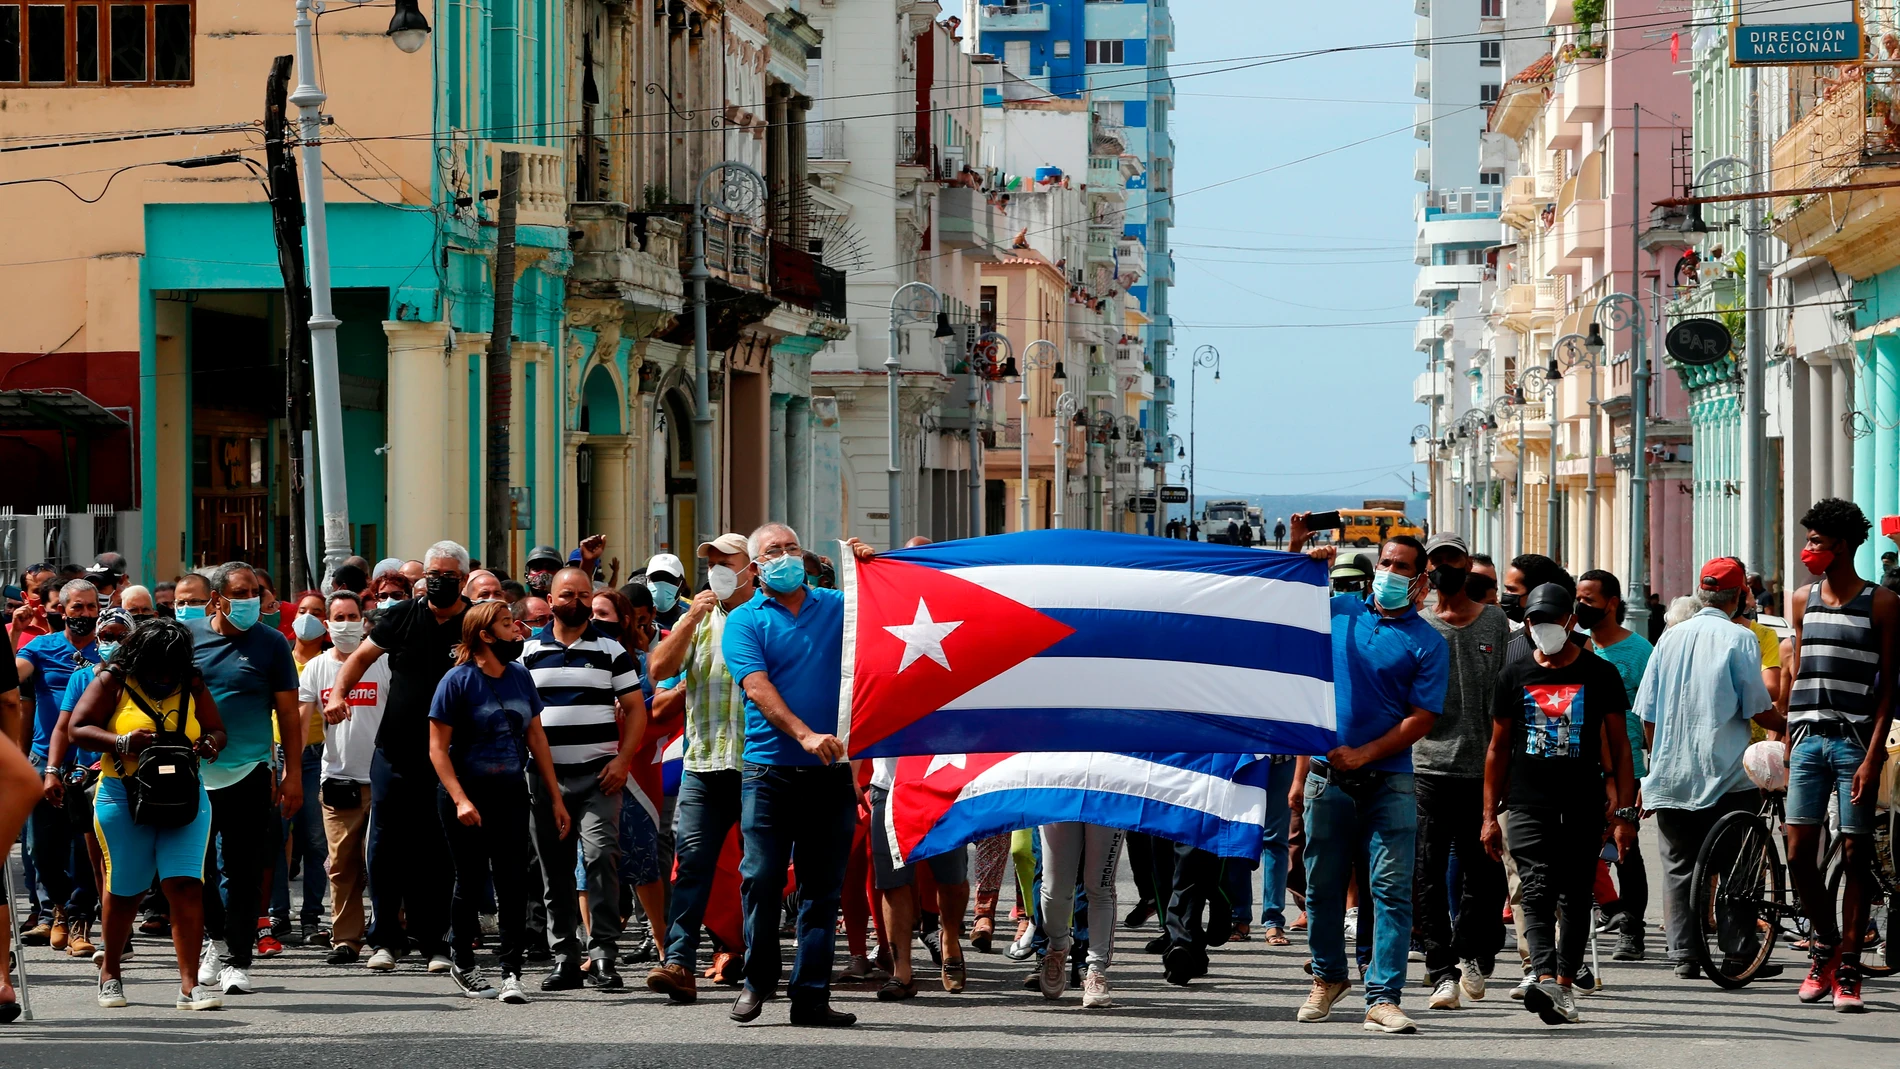 Esta polémica decisión ocurre en un momento delicado en Cuba con una marcha cívica convocada por la oposición para el próximo lunes